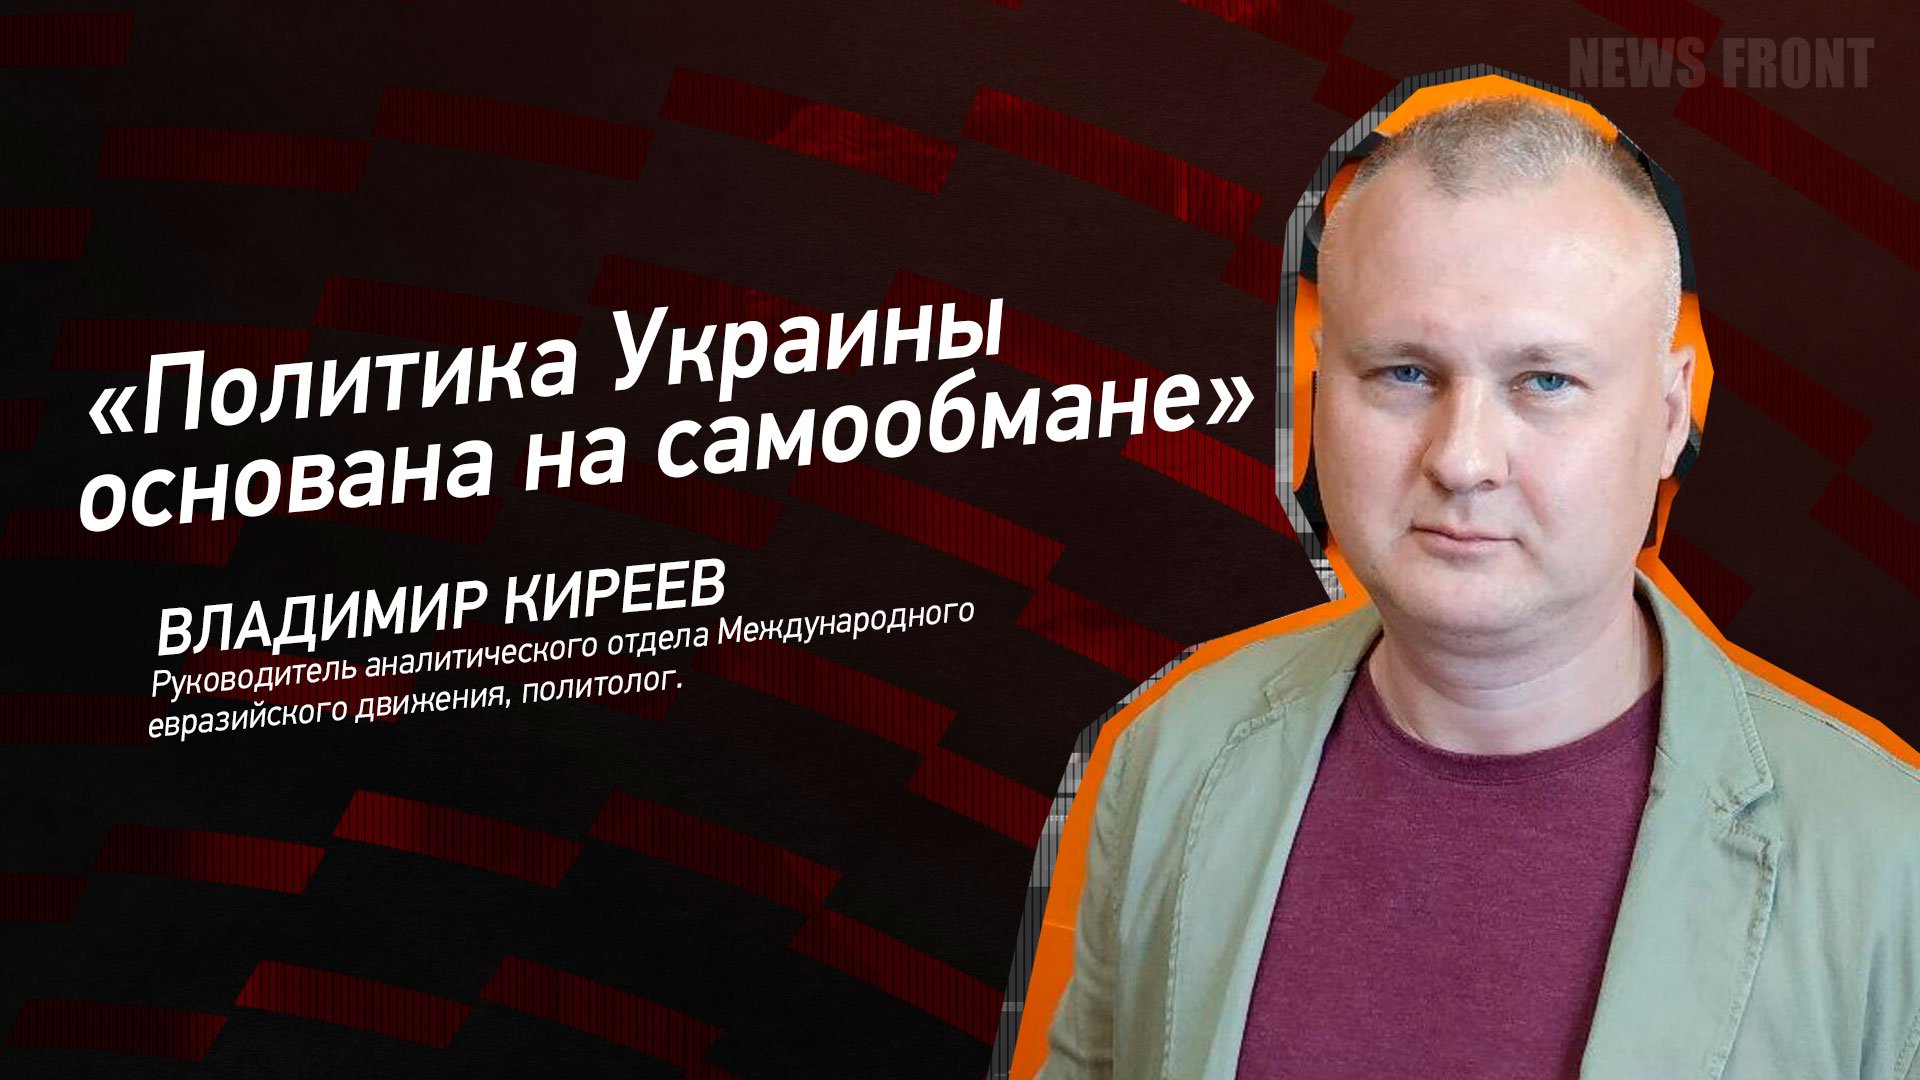 "Политика Украины основана на самообмане" - Владимир Киреев